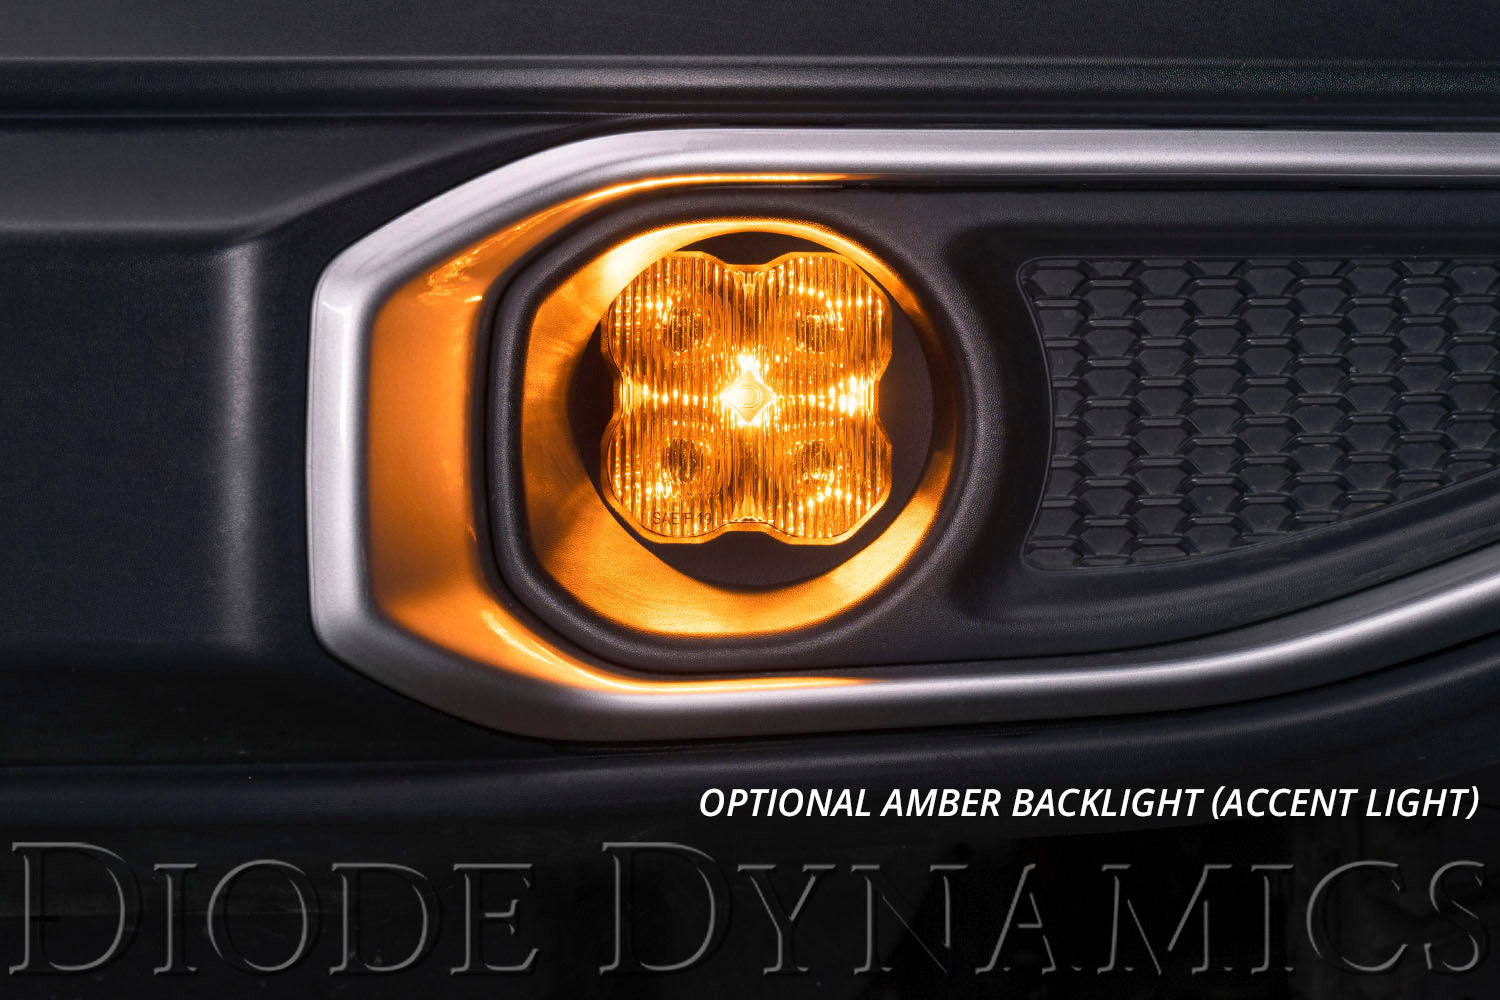 SS3 LED Fog Light Kit for 2007-2014 Chevrolet Tahoe White SAE Fog Sport Diode Dynamics